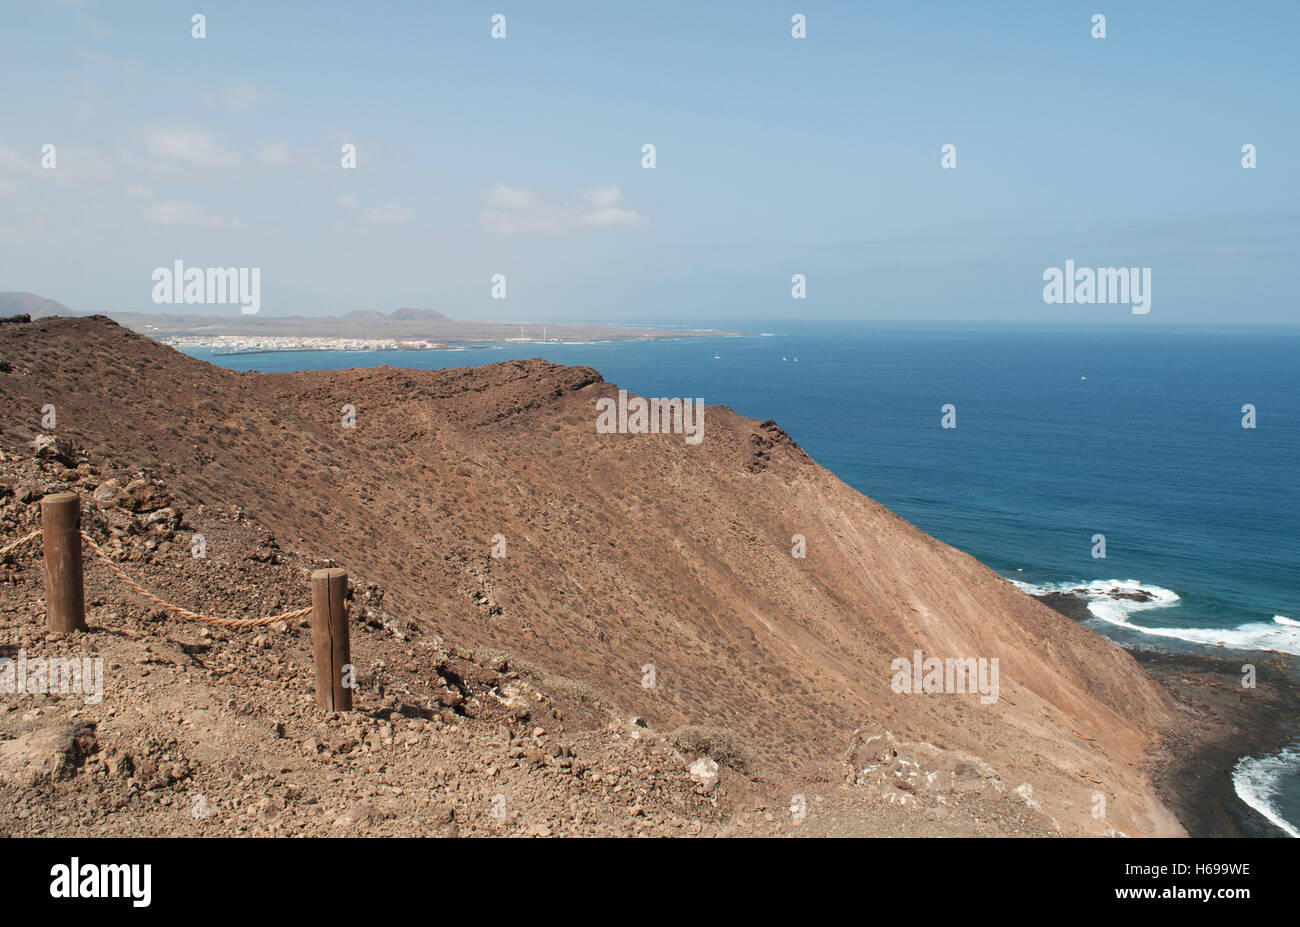 Canaries, Espagne : la vue du sommet de la Caldera, le volcan de la montagne de la petite île de Lobos, à 2 kilomètres au nord de Fuerteventura Banque D'Images